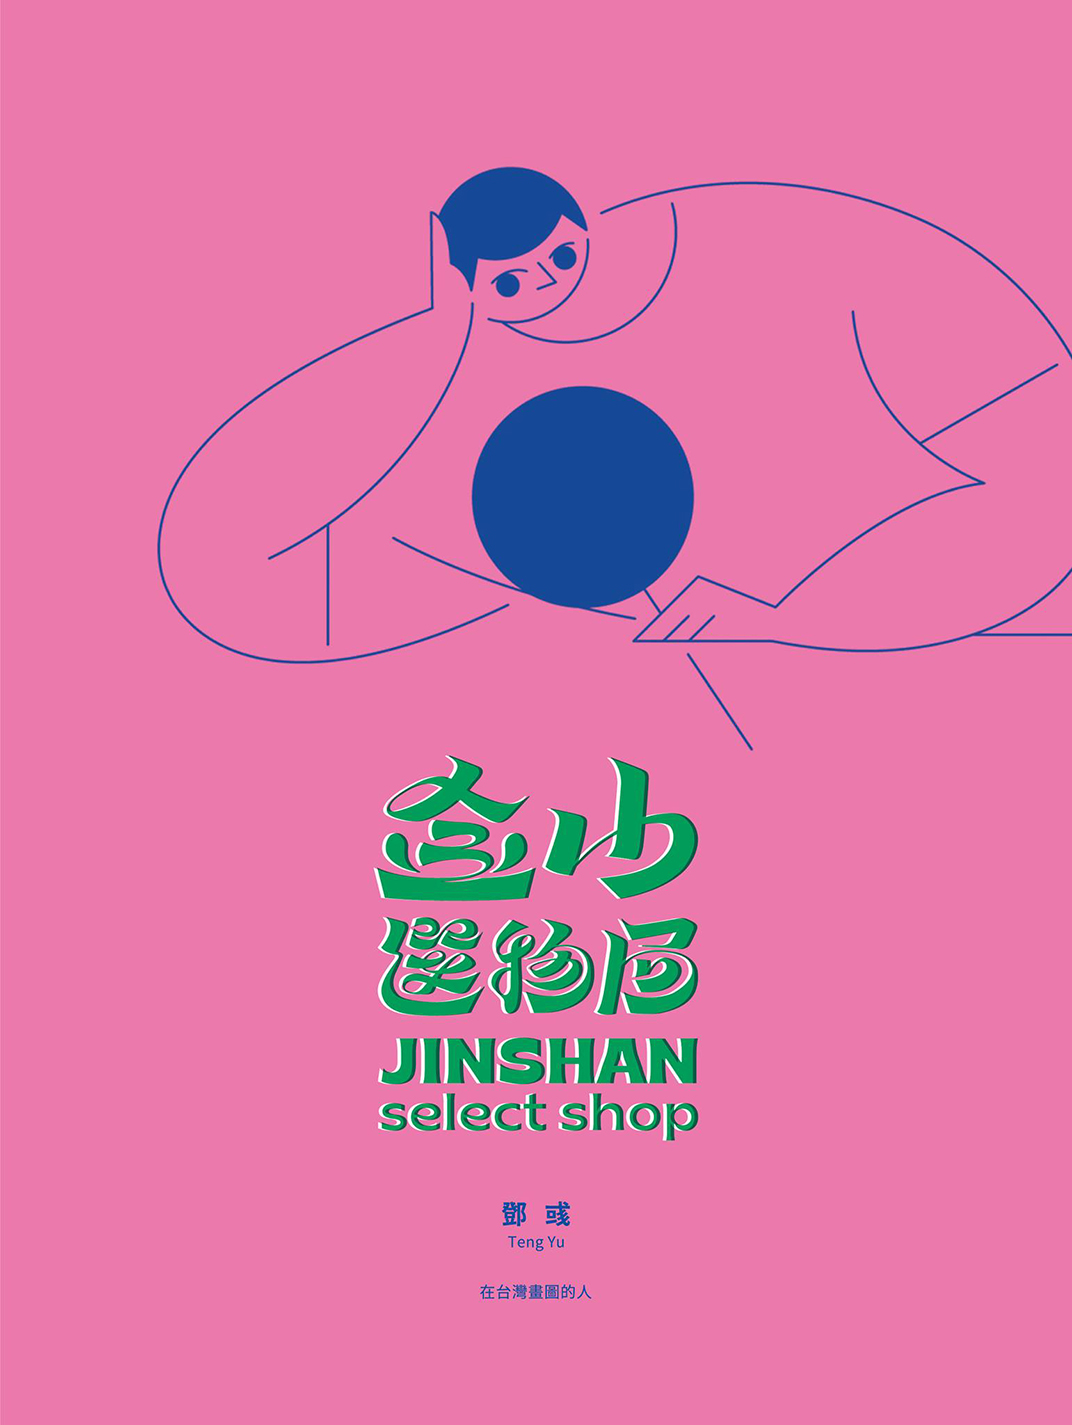 金山选物局品牌形象logo设计 台湾 深圳 上海 北京 广州 武汉 咖啡店 餐饮商业 logo设计 vi设计 空间设计